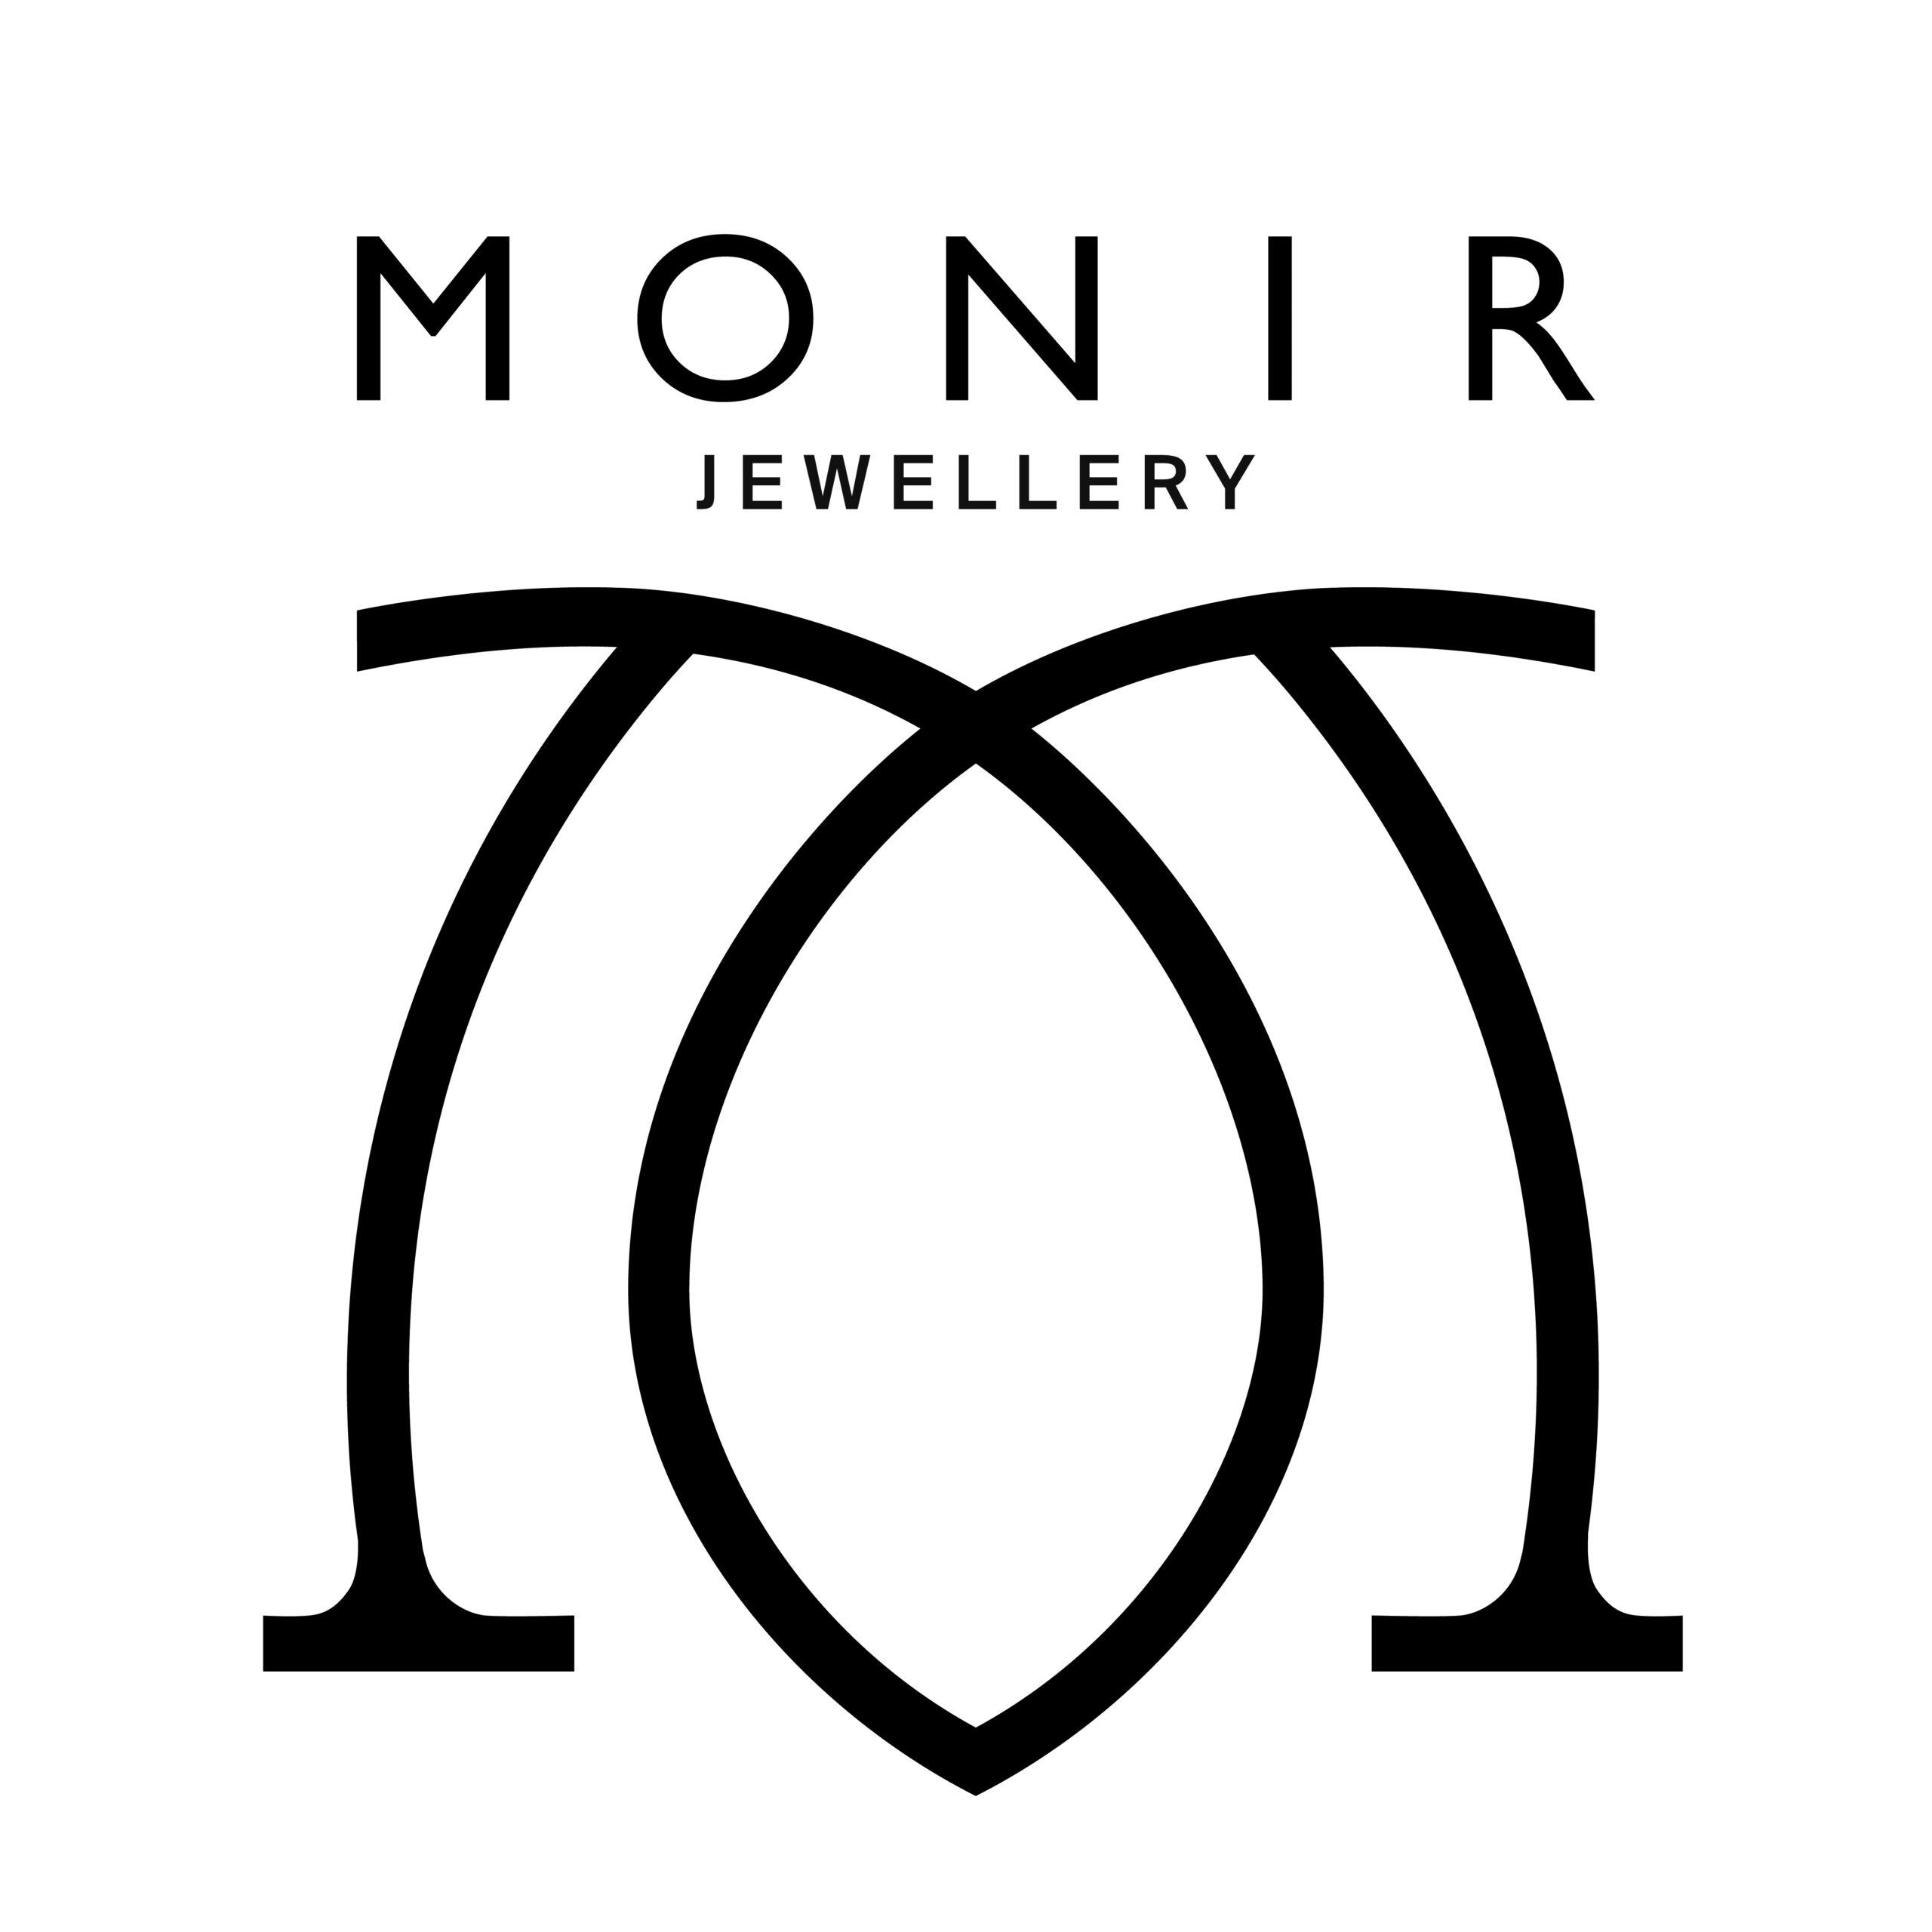 Monir Jewellery